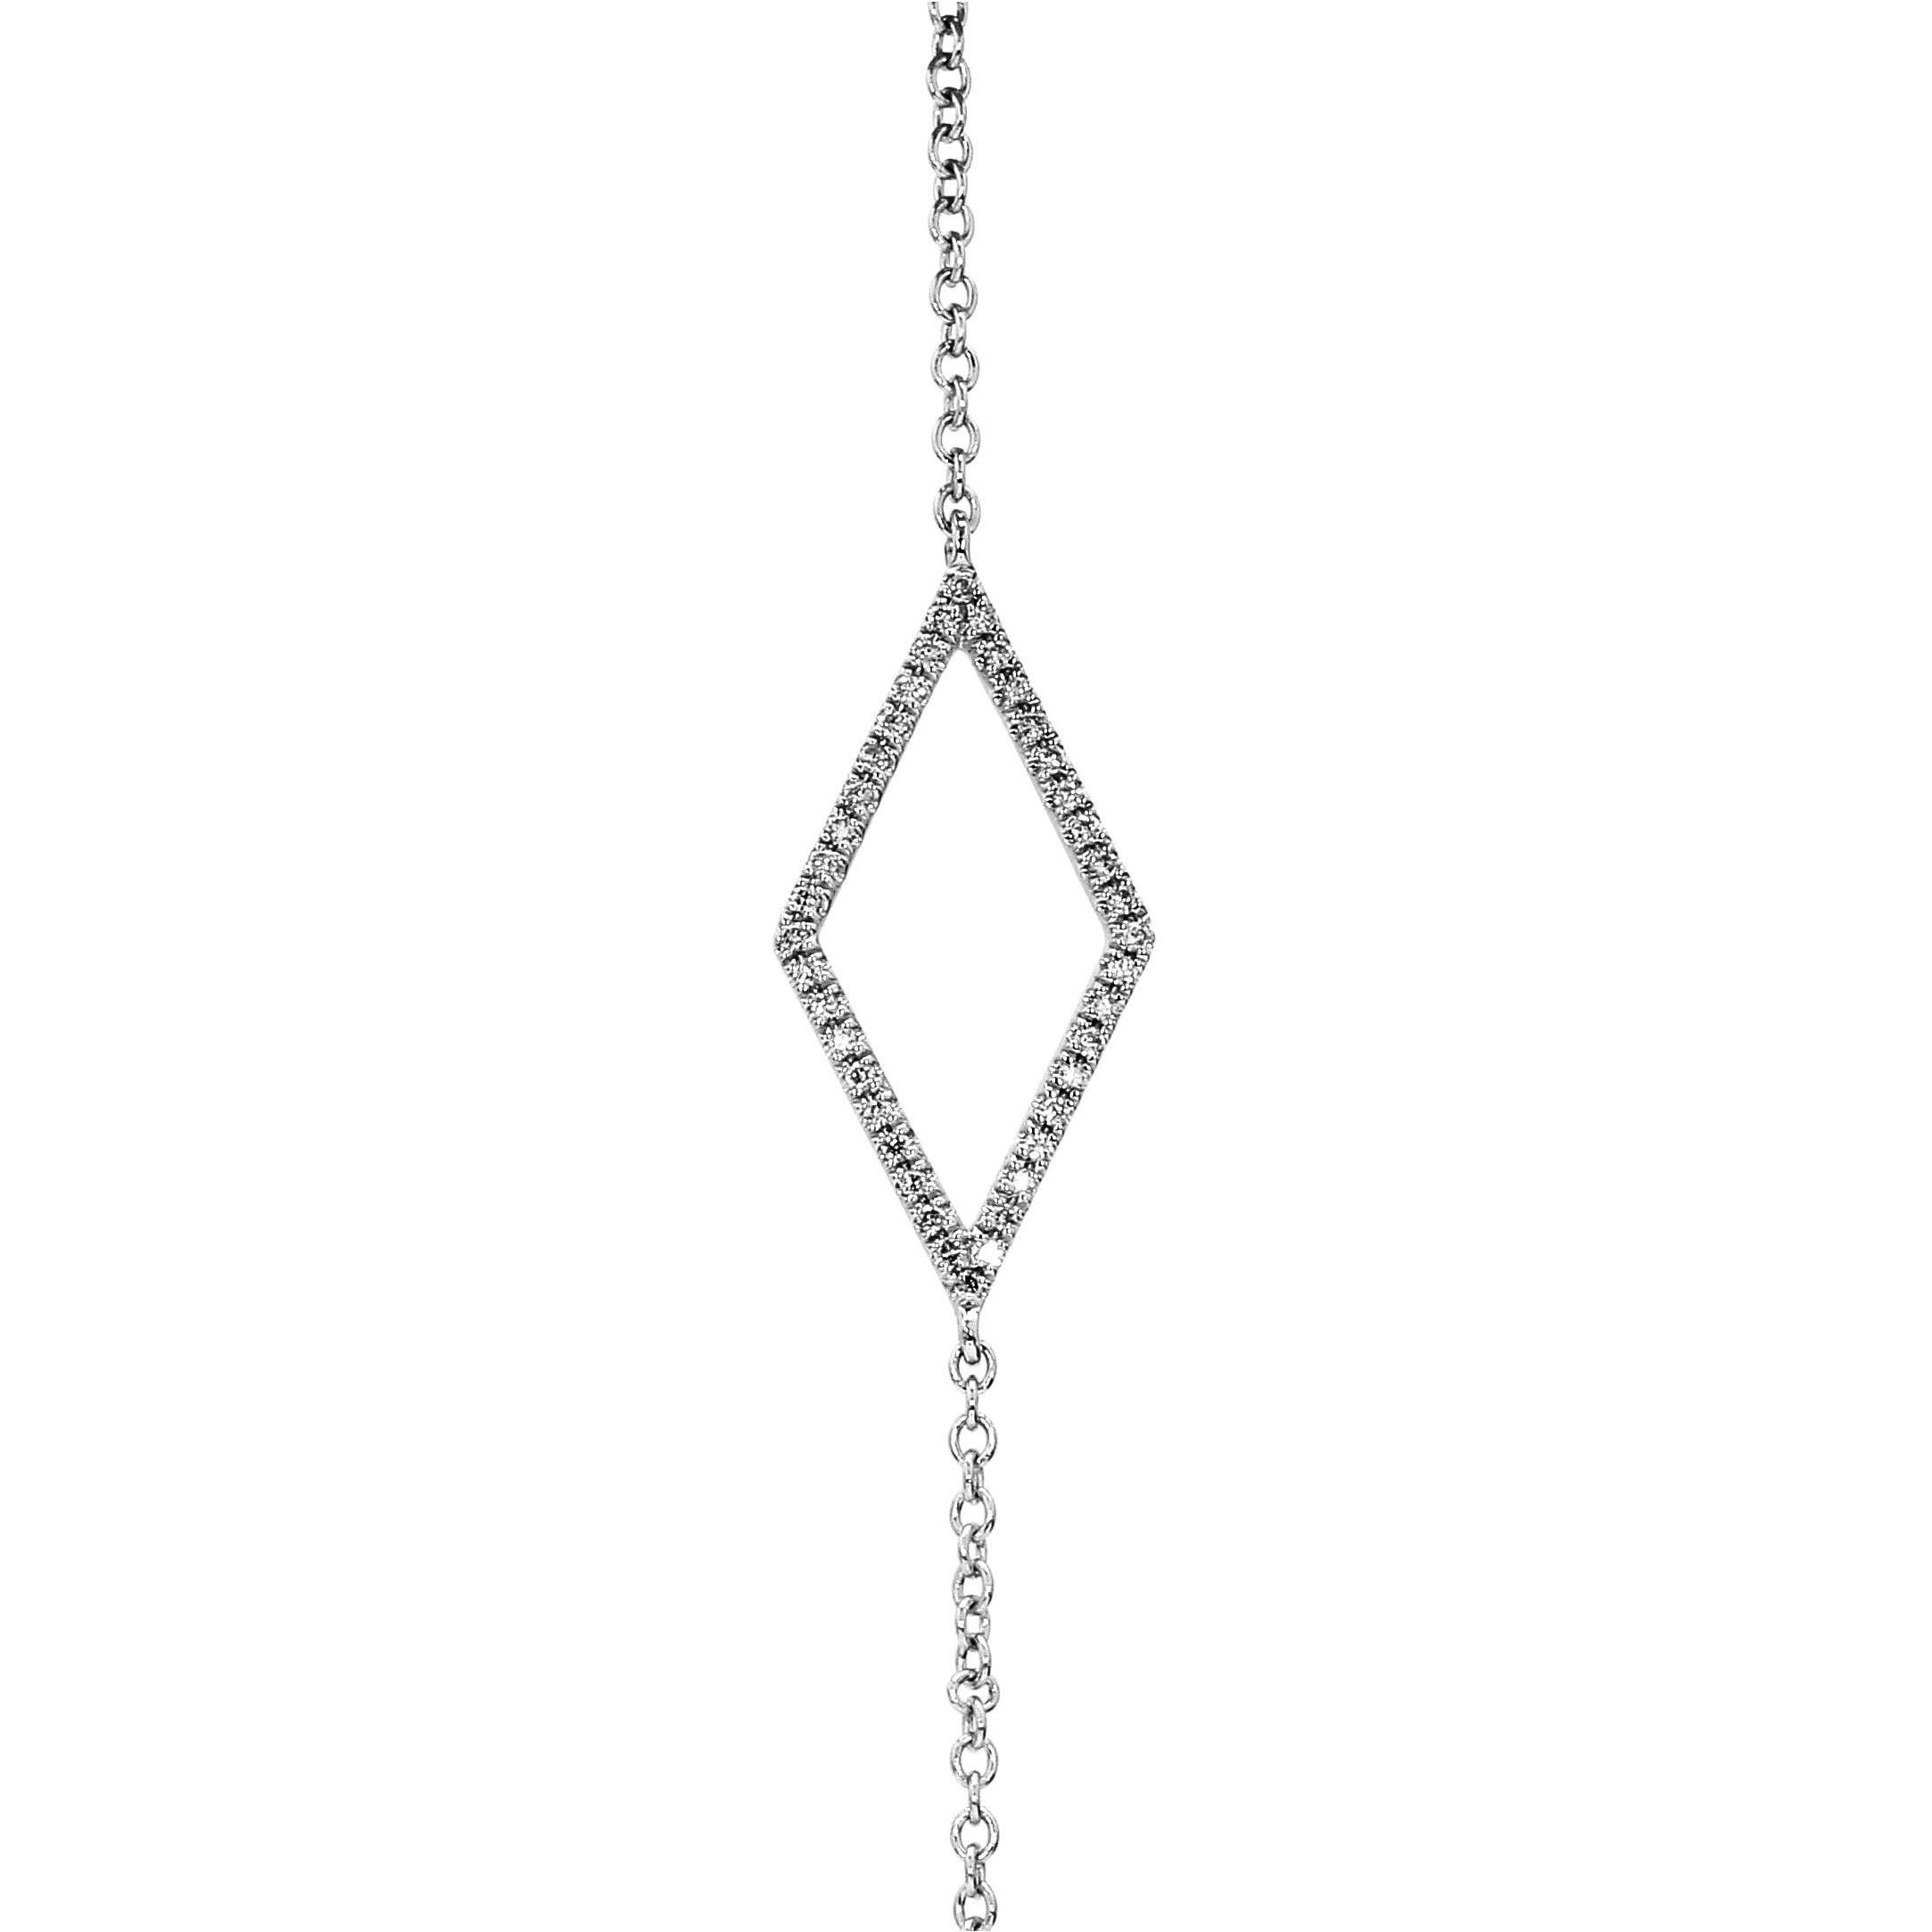 Adamar Jewels LUZ Cometa Bracelet in 18K white gold set with diamonds